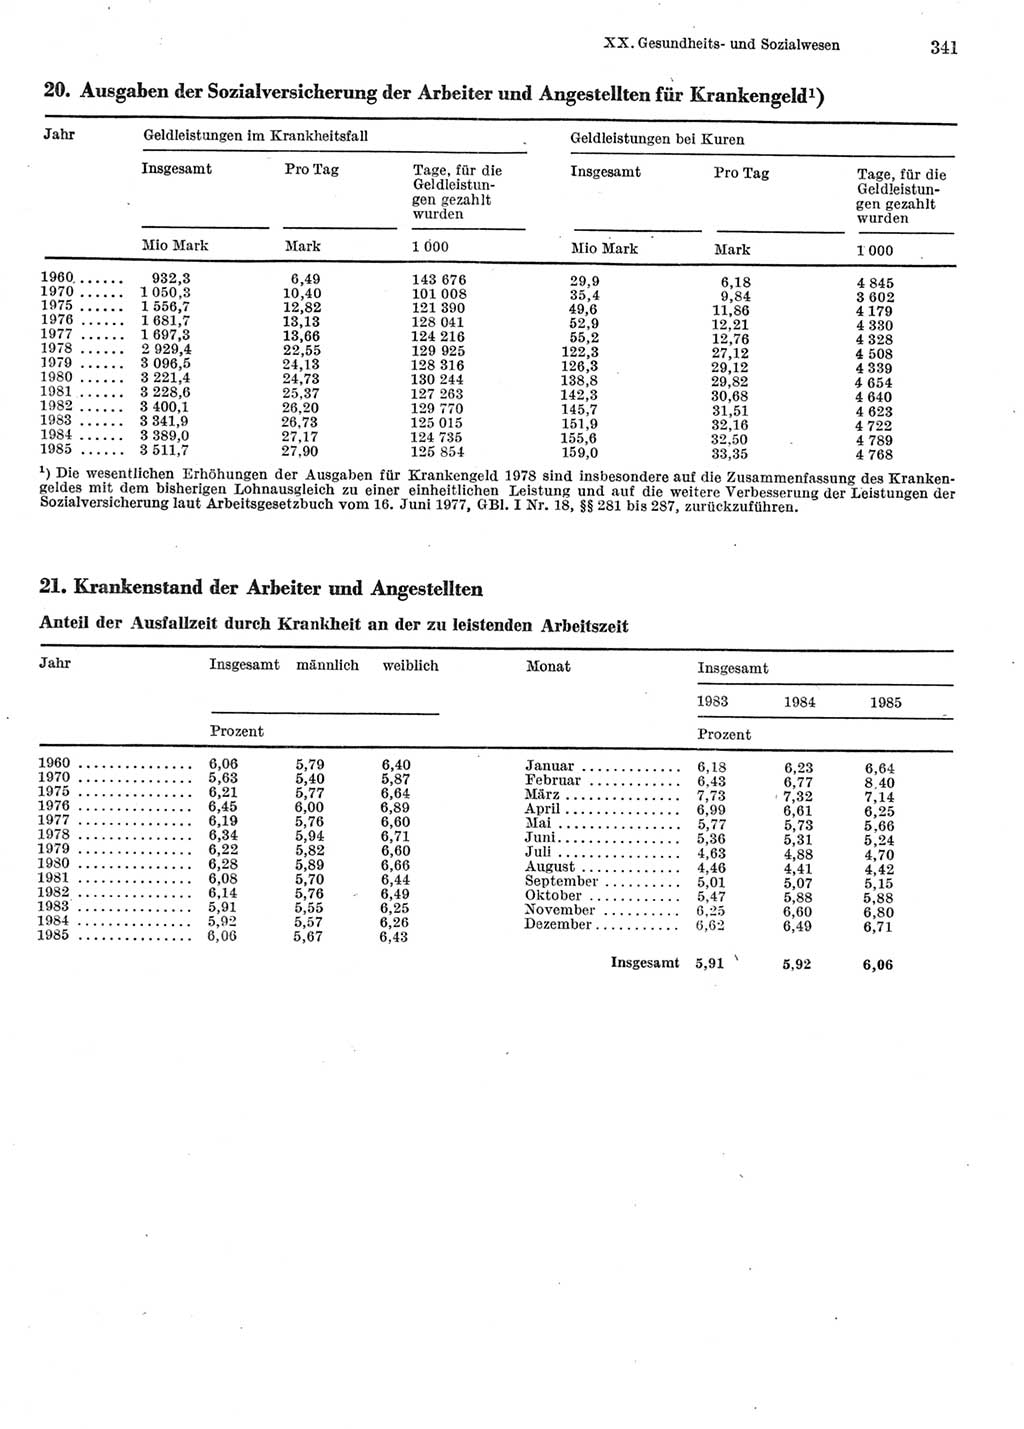 Statistisches Jahrbuch der Deutschen Demokratischen Republik (DDR) 1986, Seite 341 (Stat. Jb. DDR 1986, S. 341)